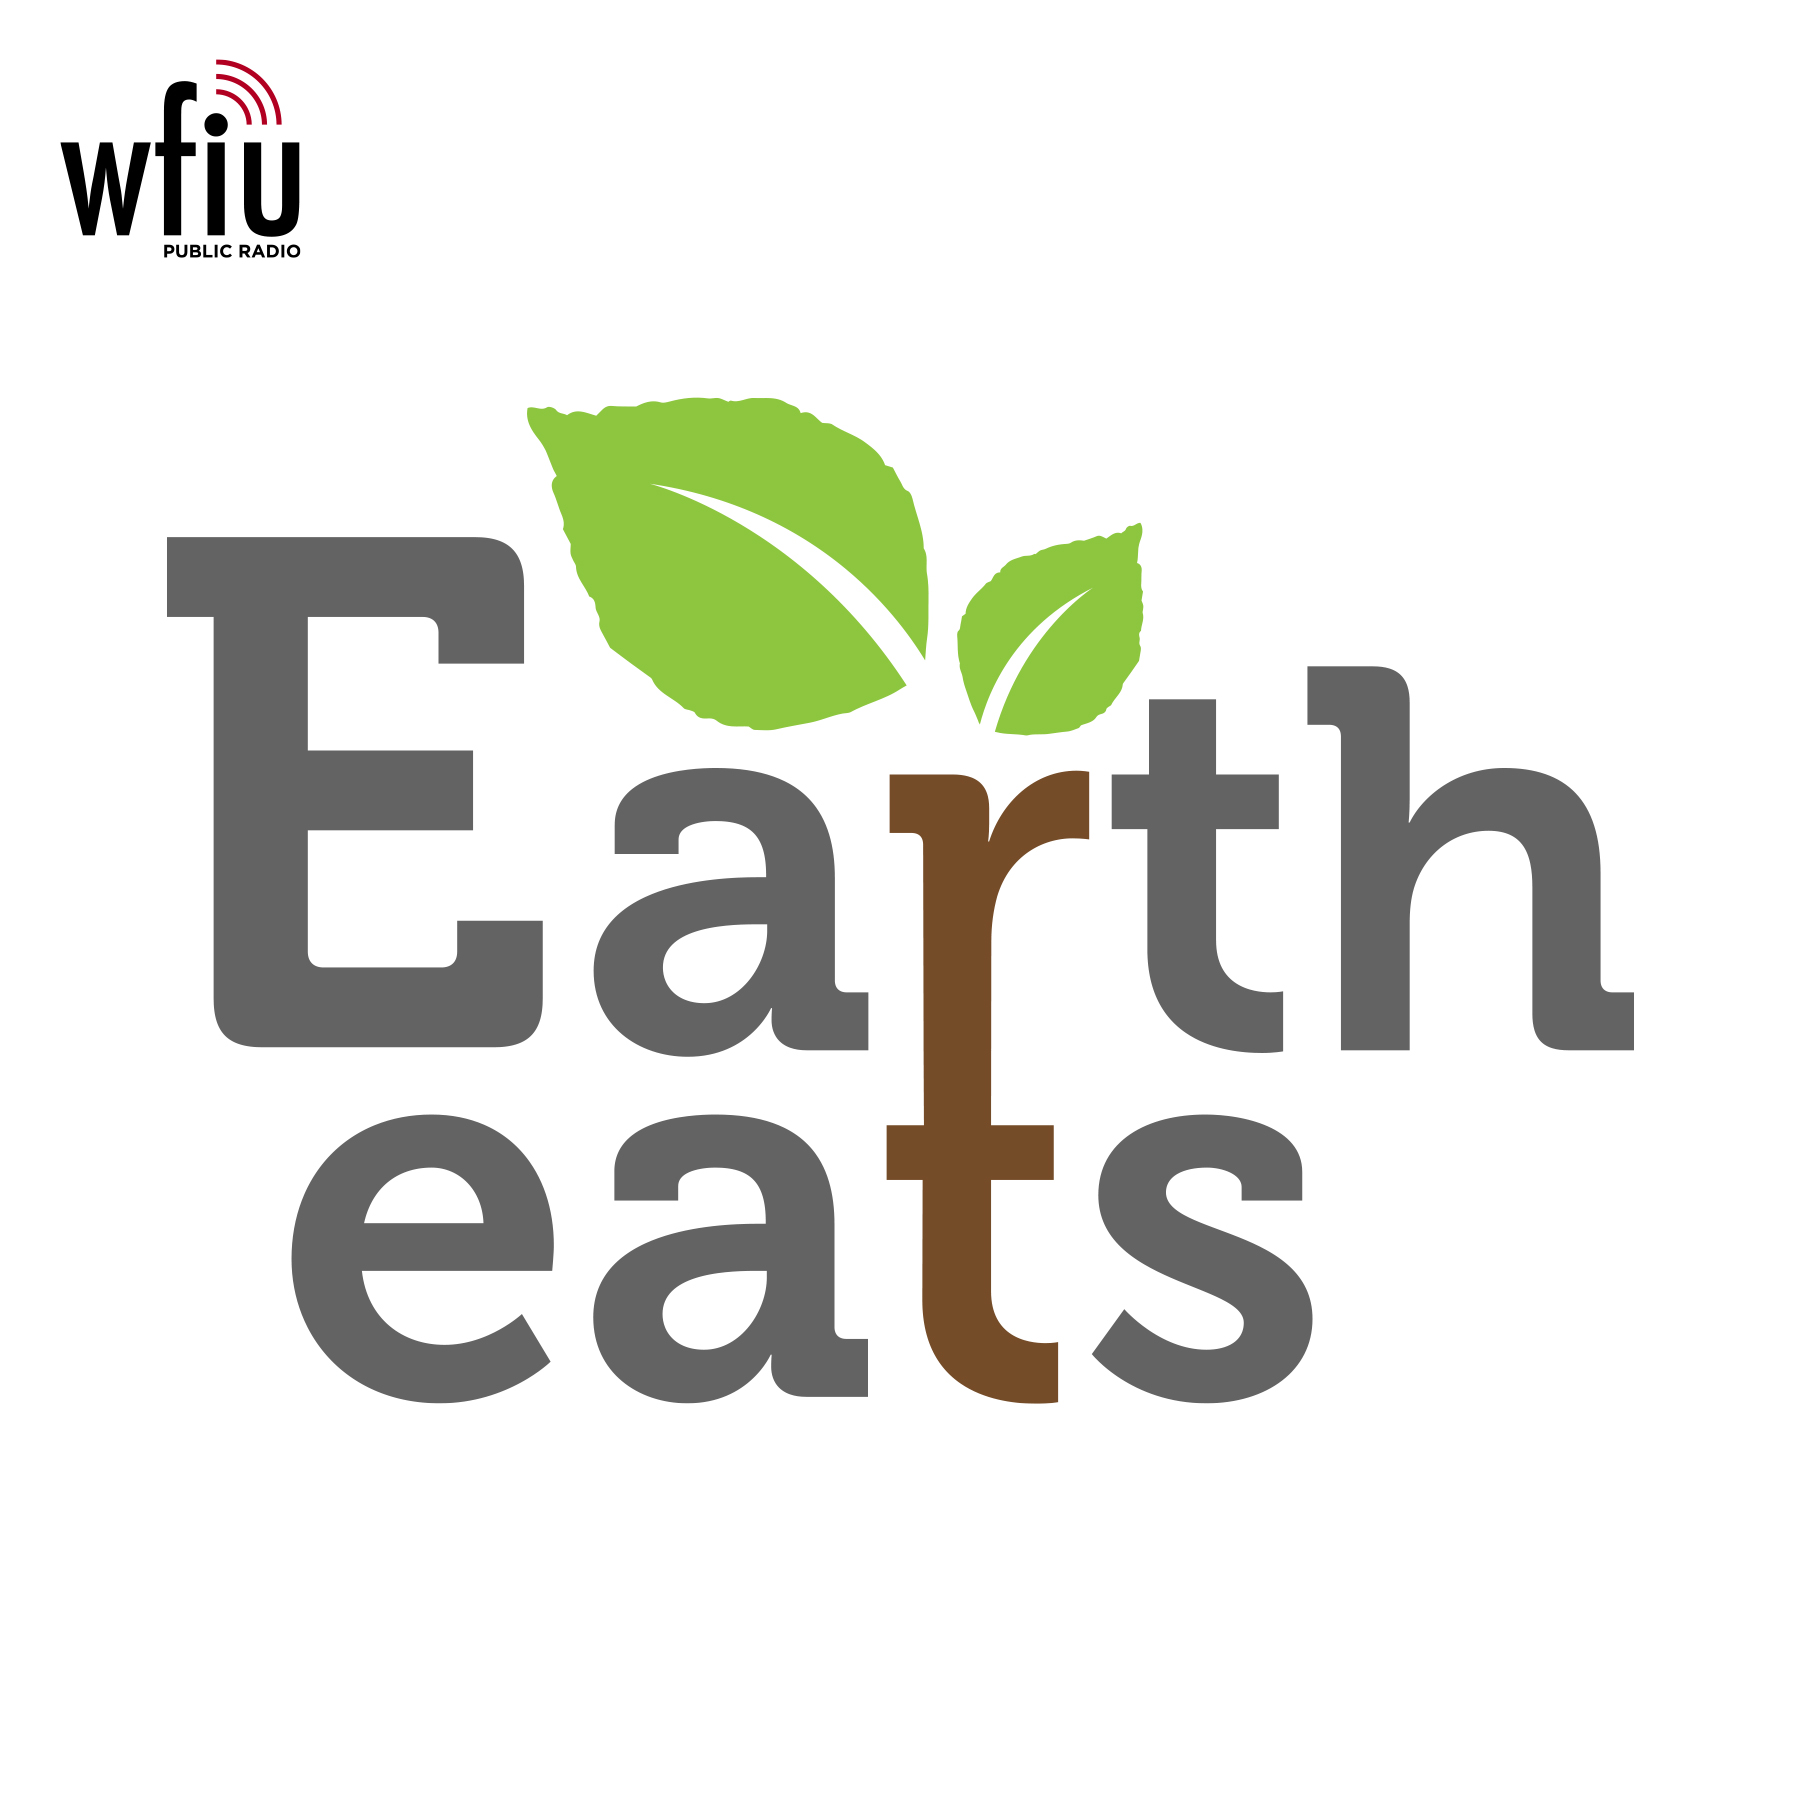 Earth Eats